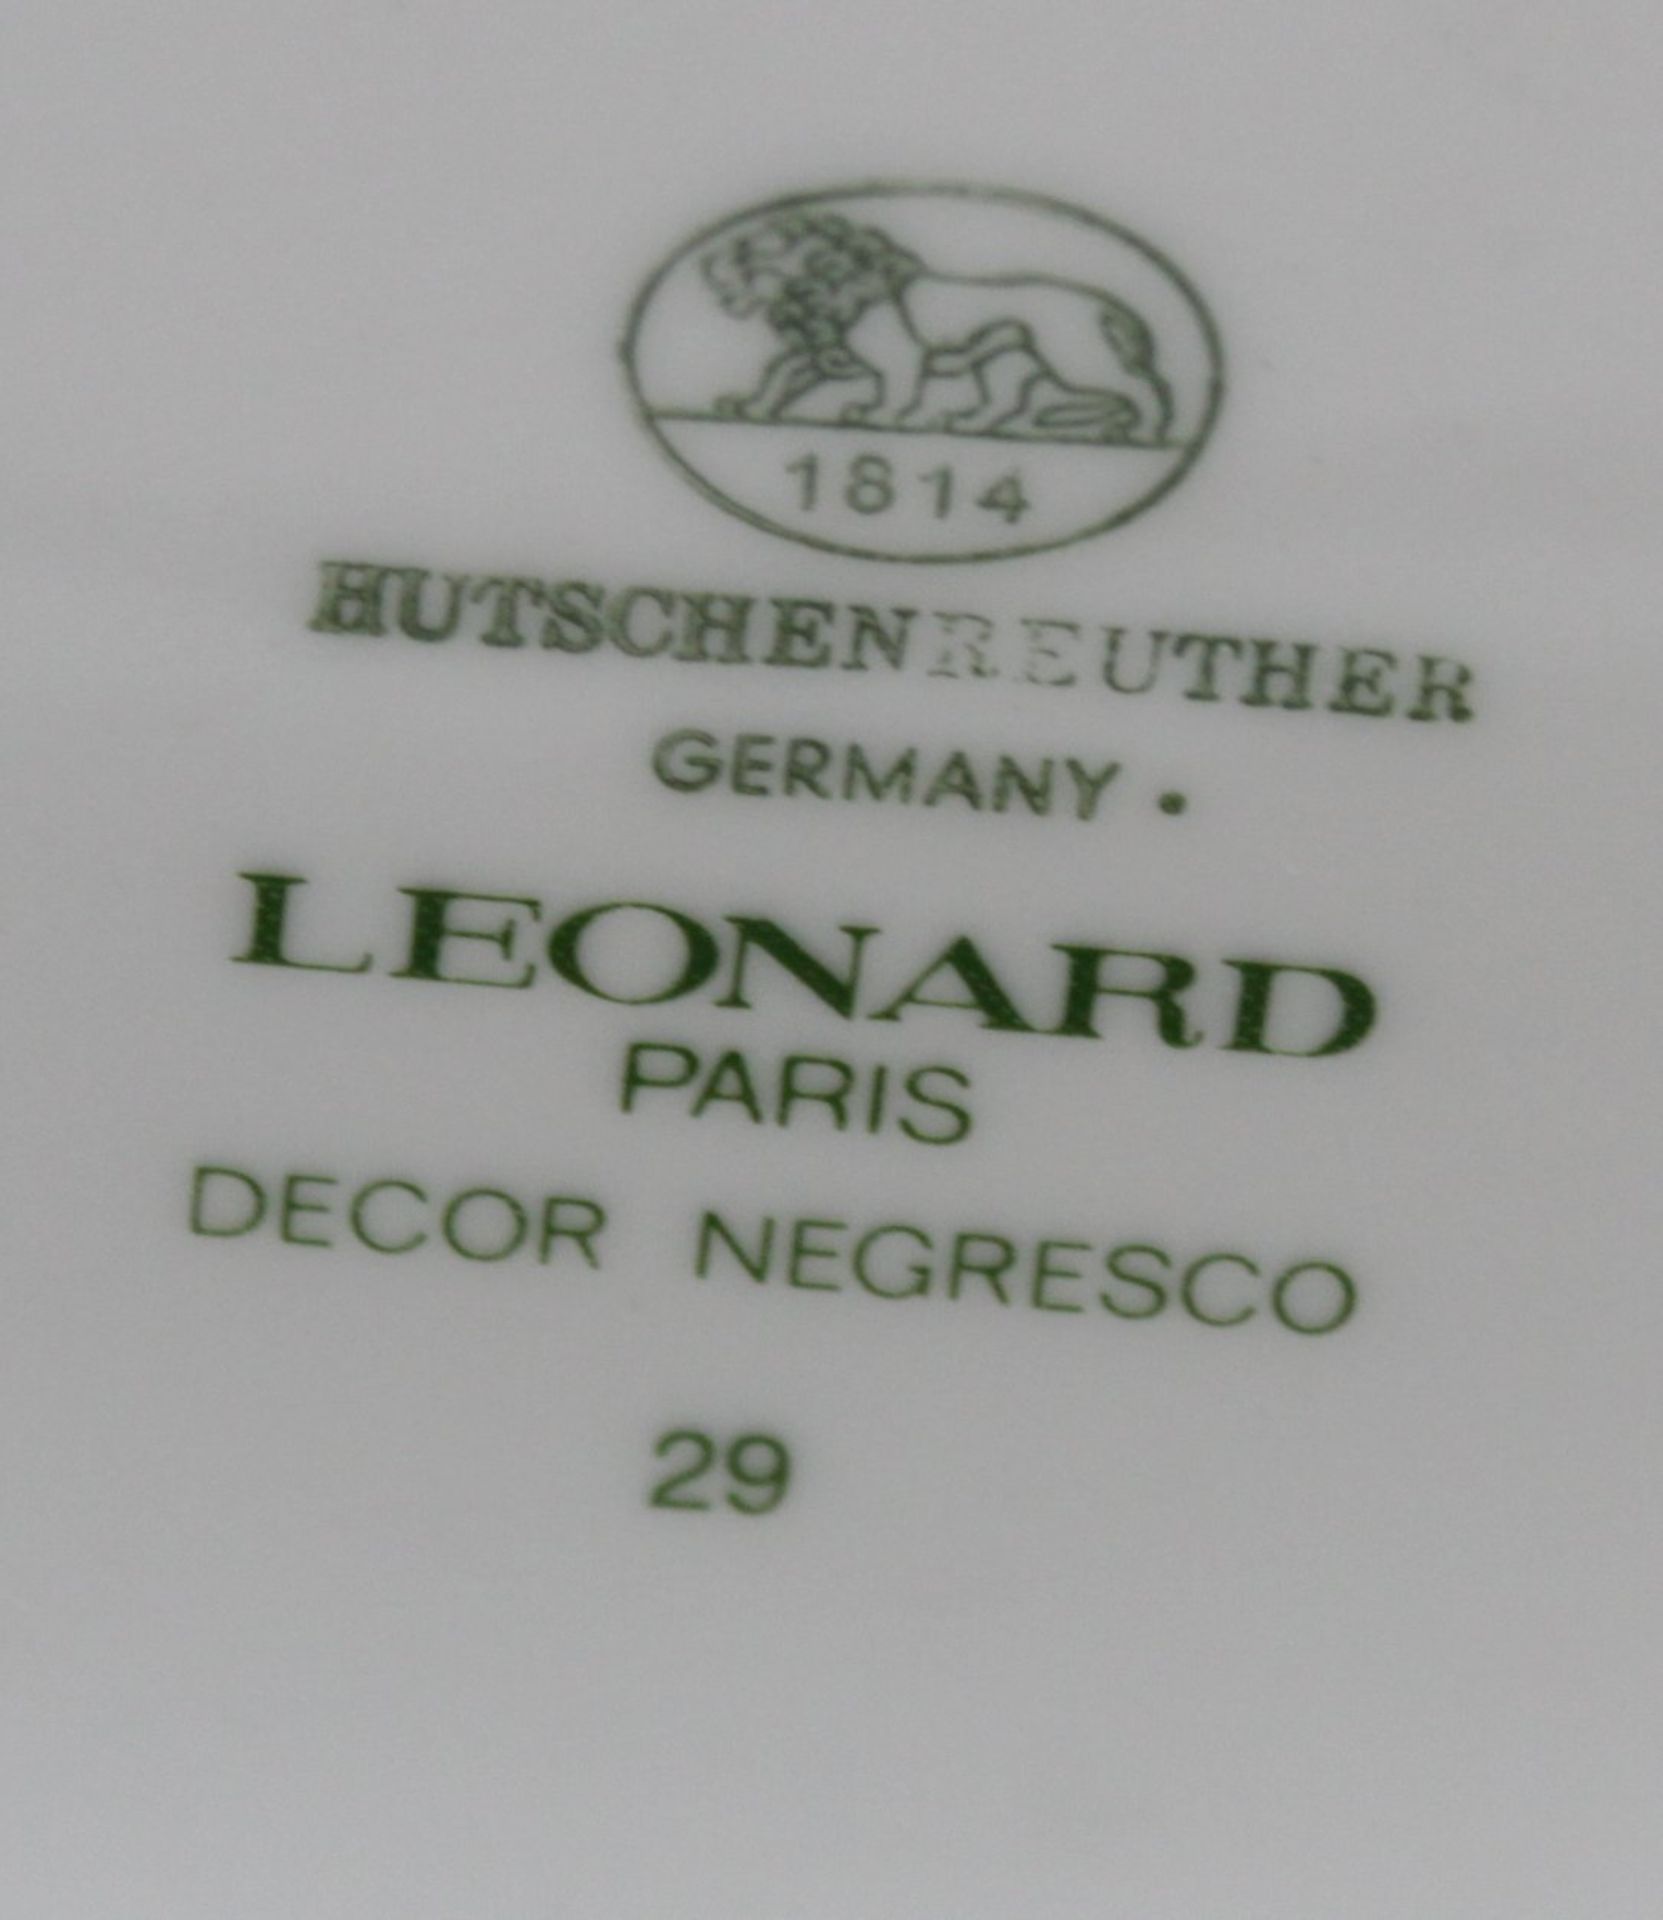 ovale Deckeldose, Hutschenreuther, Leonard, Decor Negresco, H-.10,5cm B-15cm. - Bild 3 aus 3